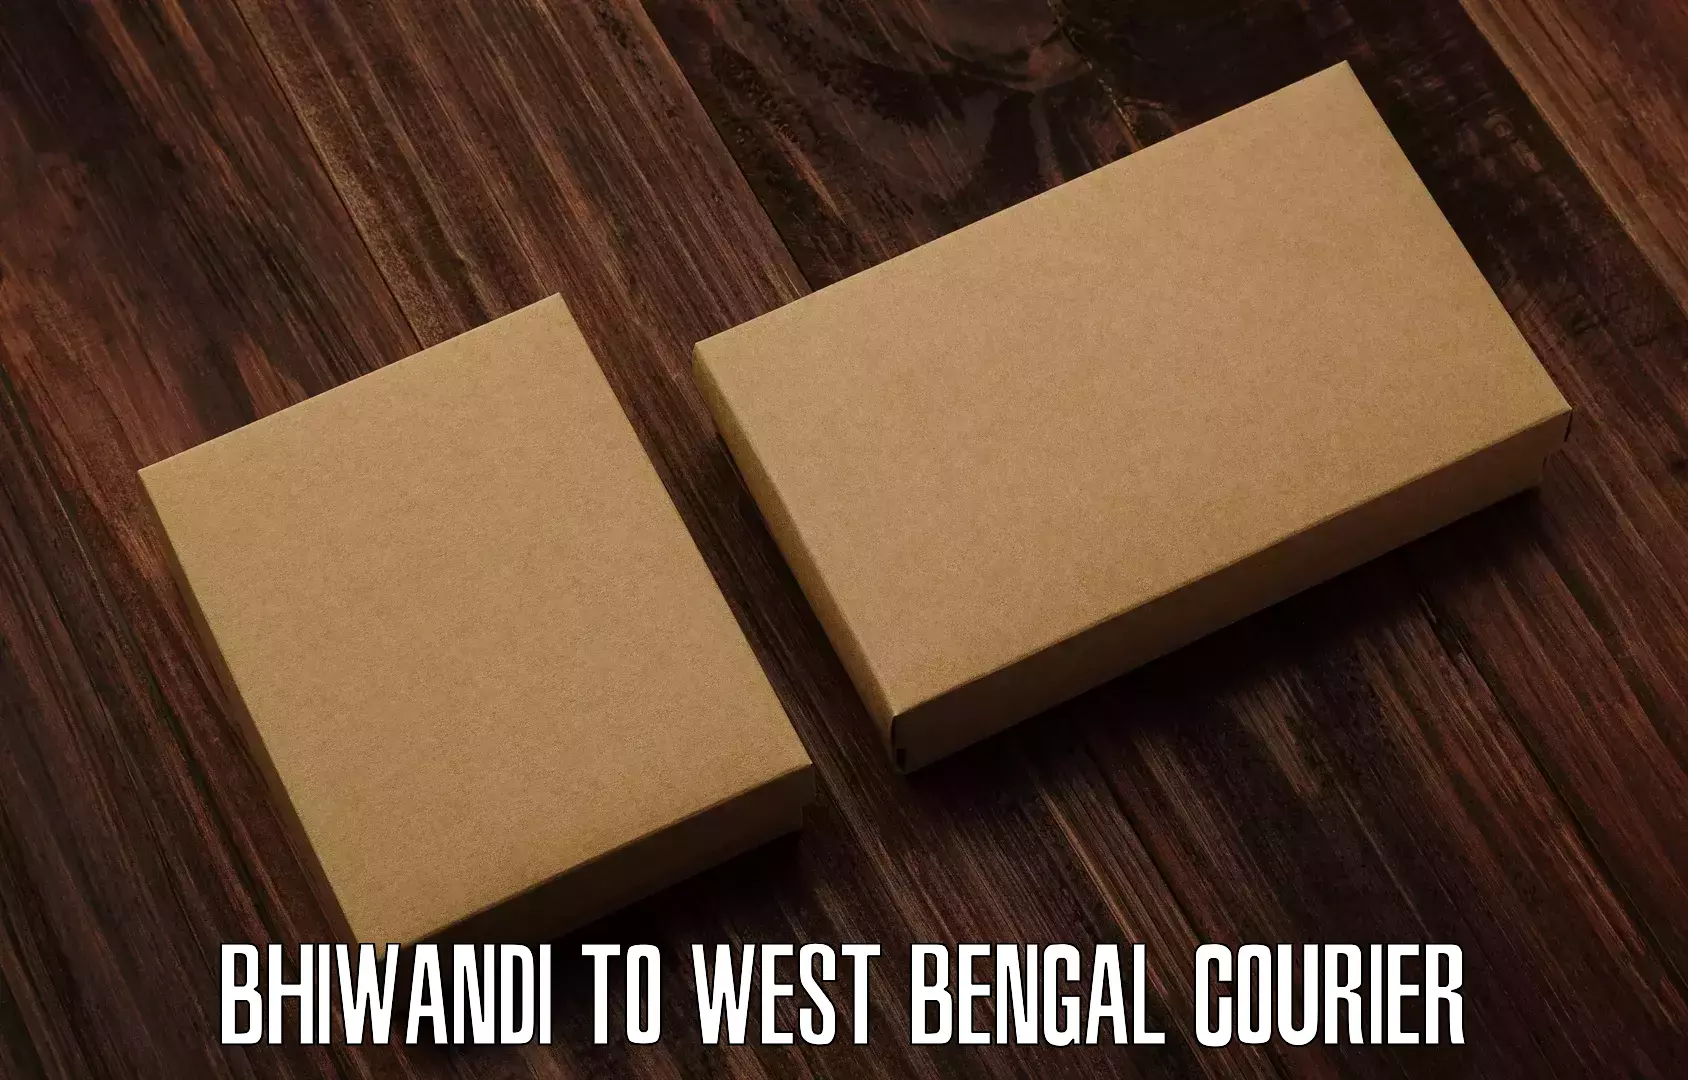 Pharmaceutical courier Bhiwandi to Kolkata Port